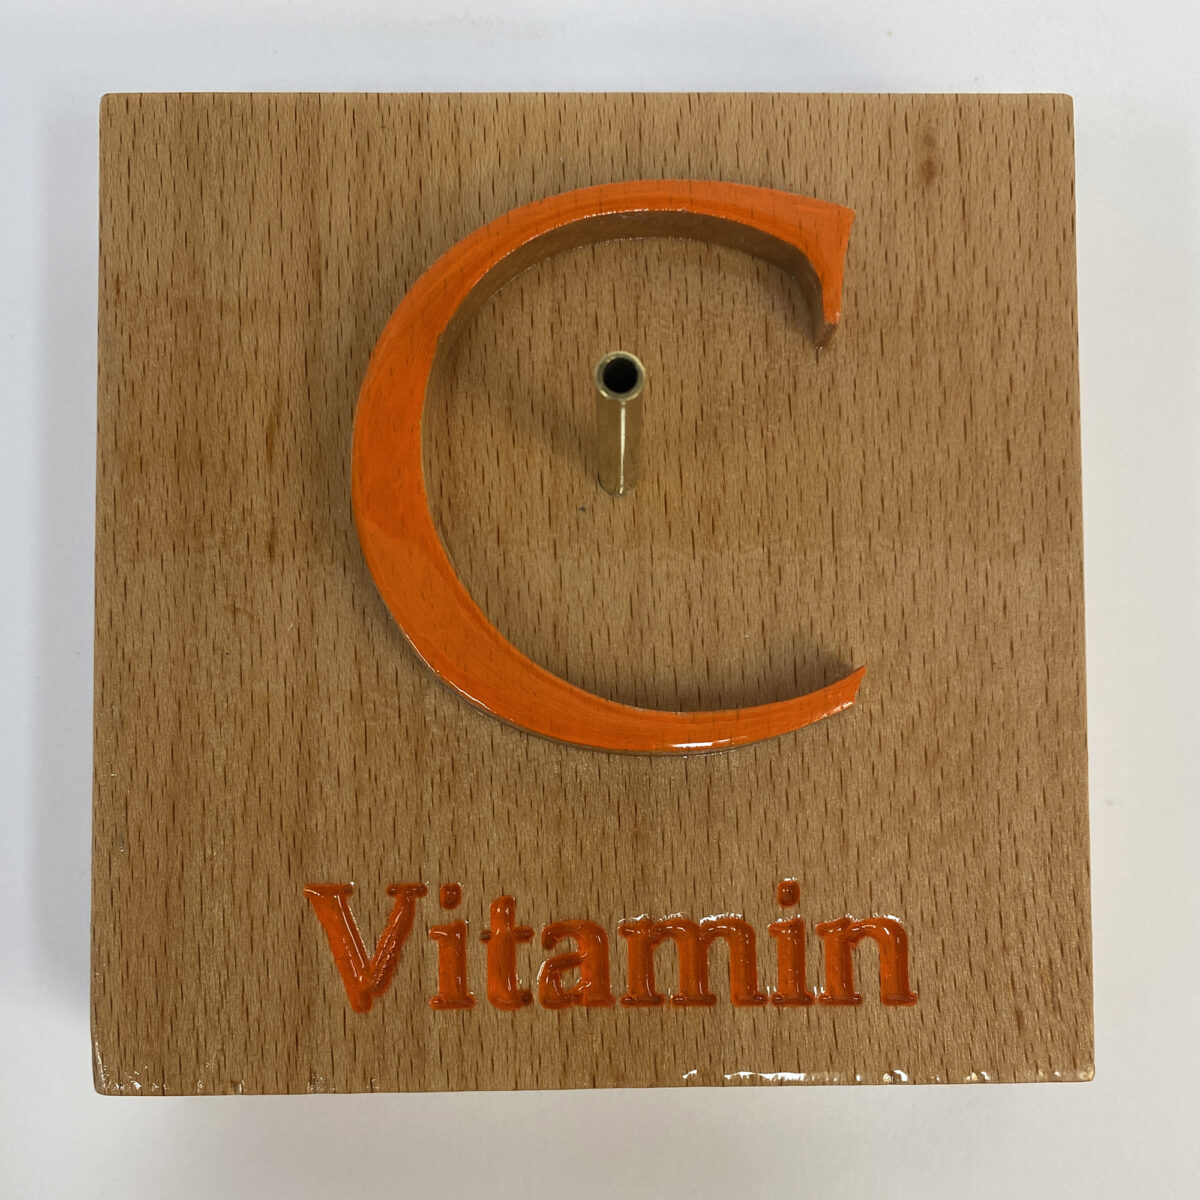 Vitamin-C molecule model